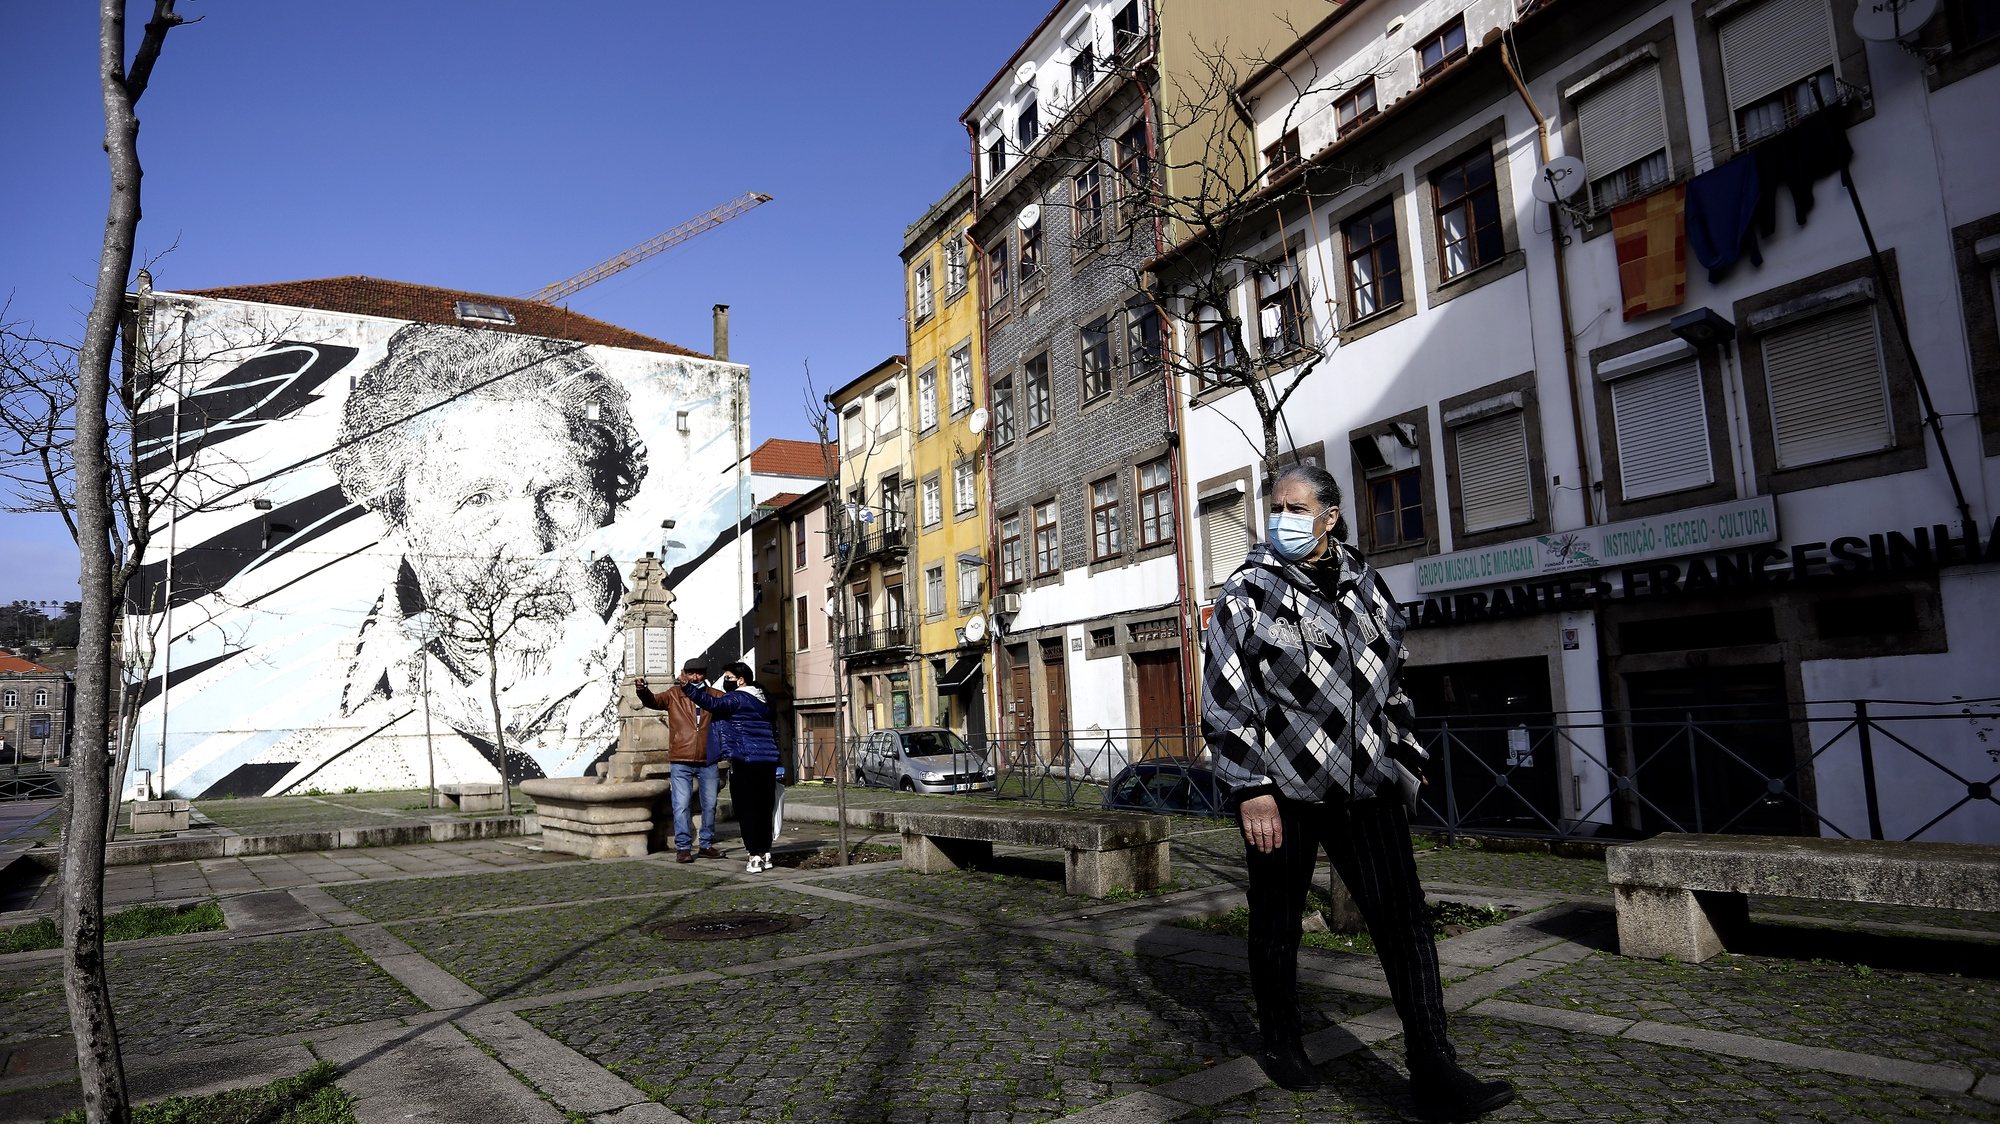 Mulher caminha na zona histórica da cidade, durante período com medidas de restrição impostas pelo novo confinamento, na sequência da pandemia de Covid-19, Porto, 30 de janeiro de 2021. MANUEL FERNANDO ARAUJO/LUSA